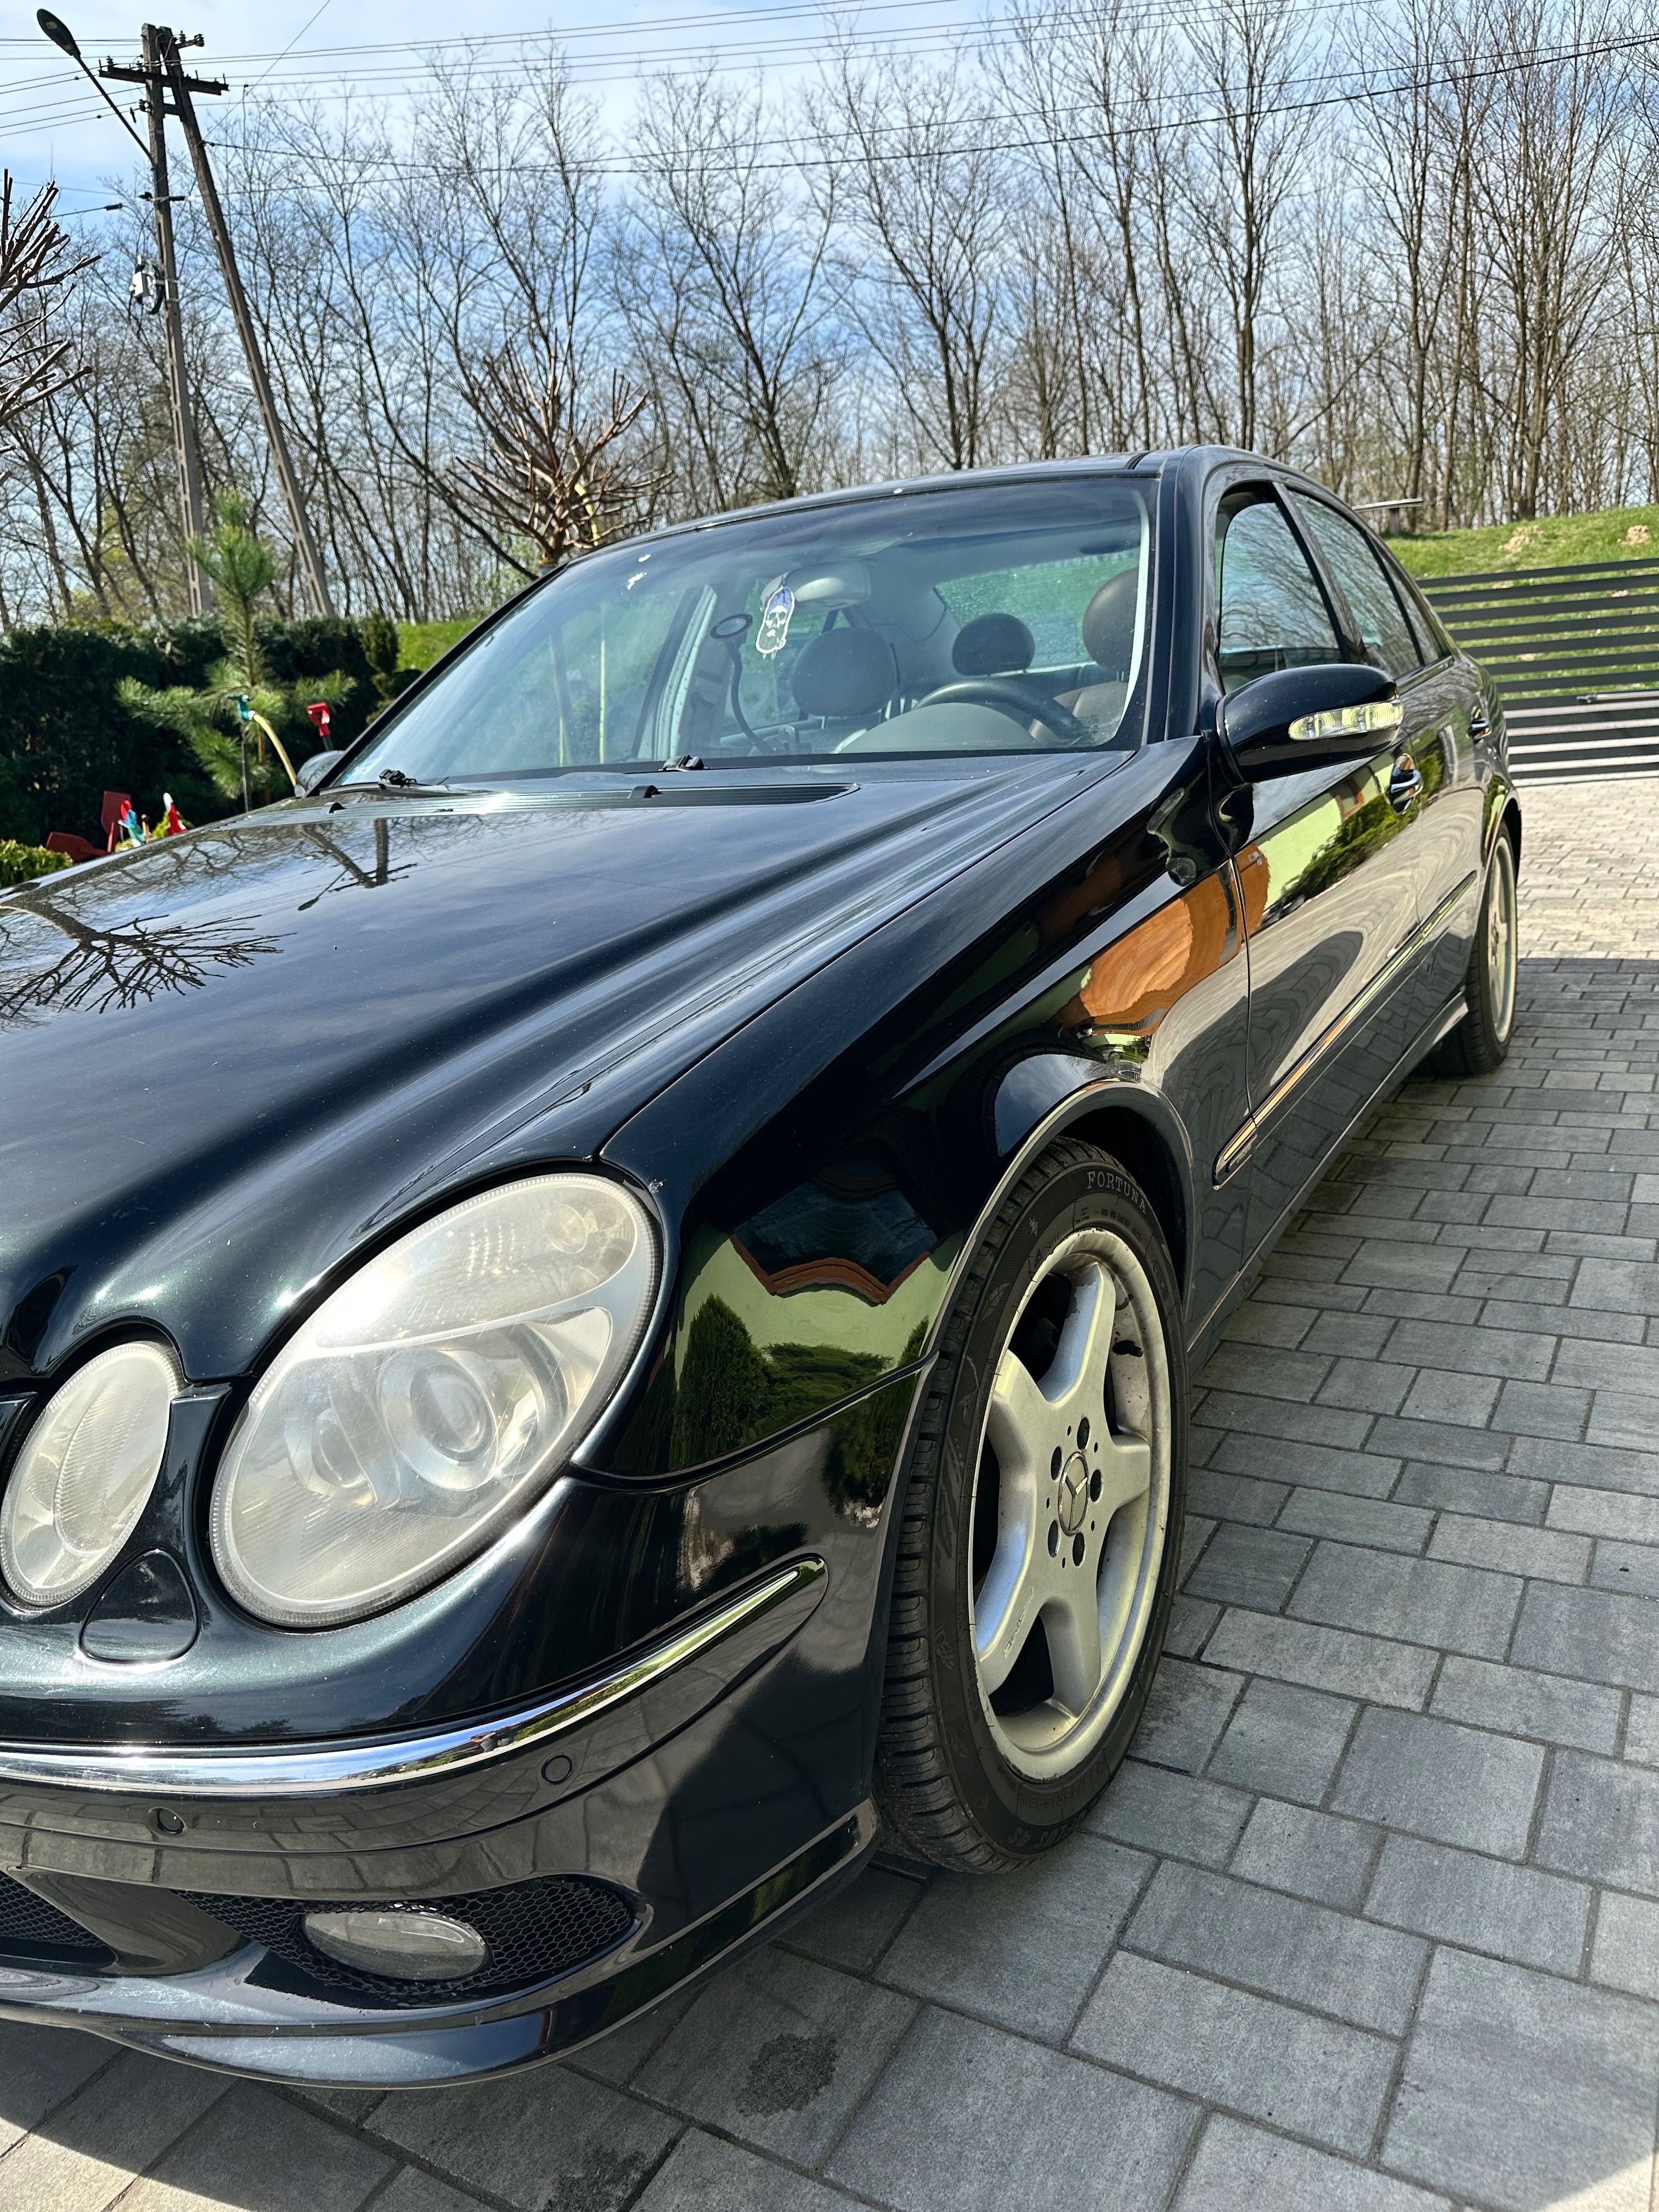 Mercedes w211 E500 w pakiecie AMG